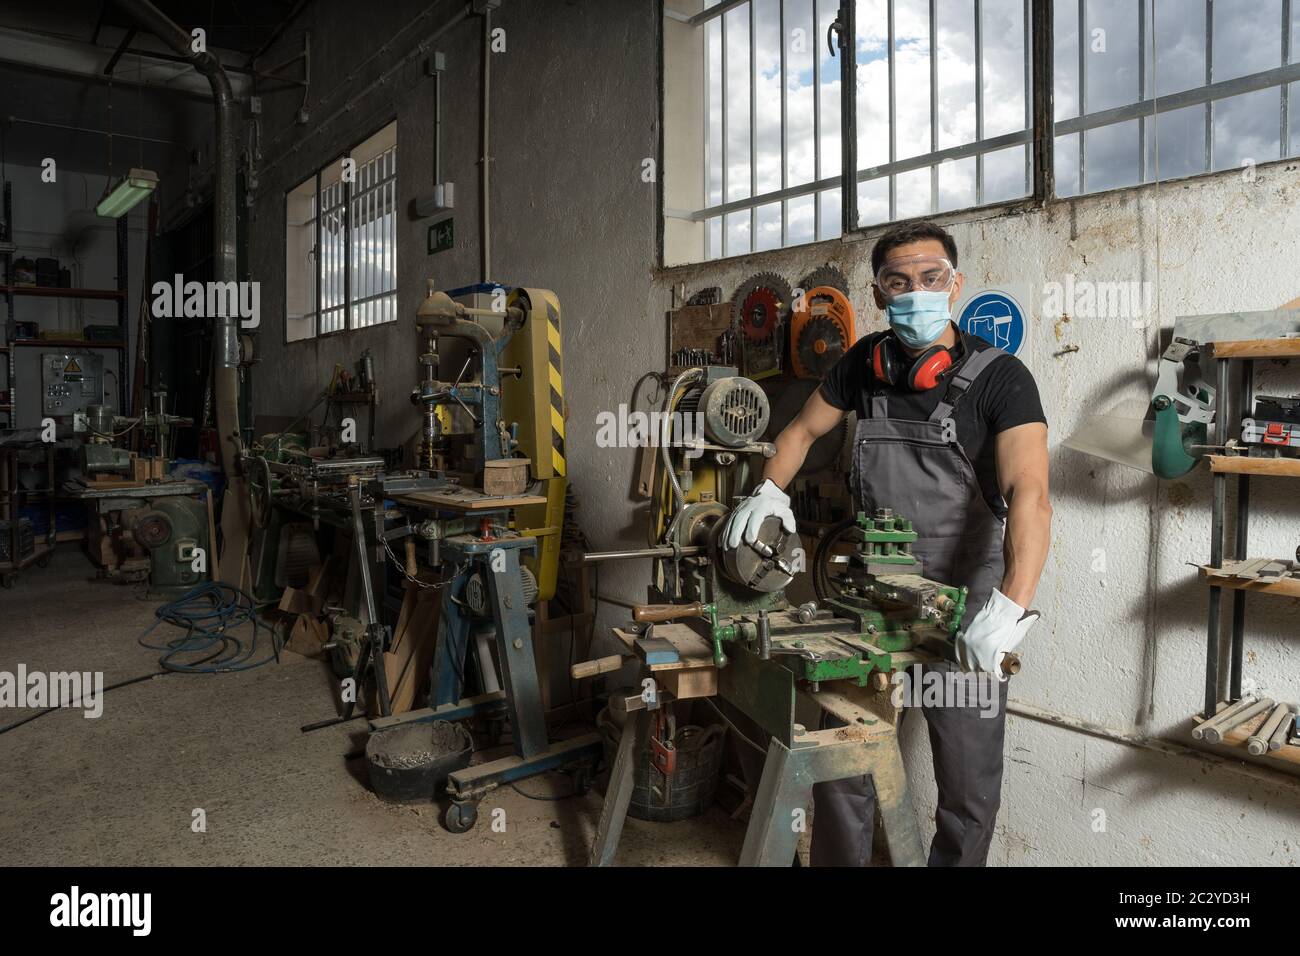 Travailleur debout avec un masque et un équipement de protection dans une usine. Photo intermédiaire. Banque D'Images